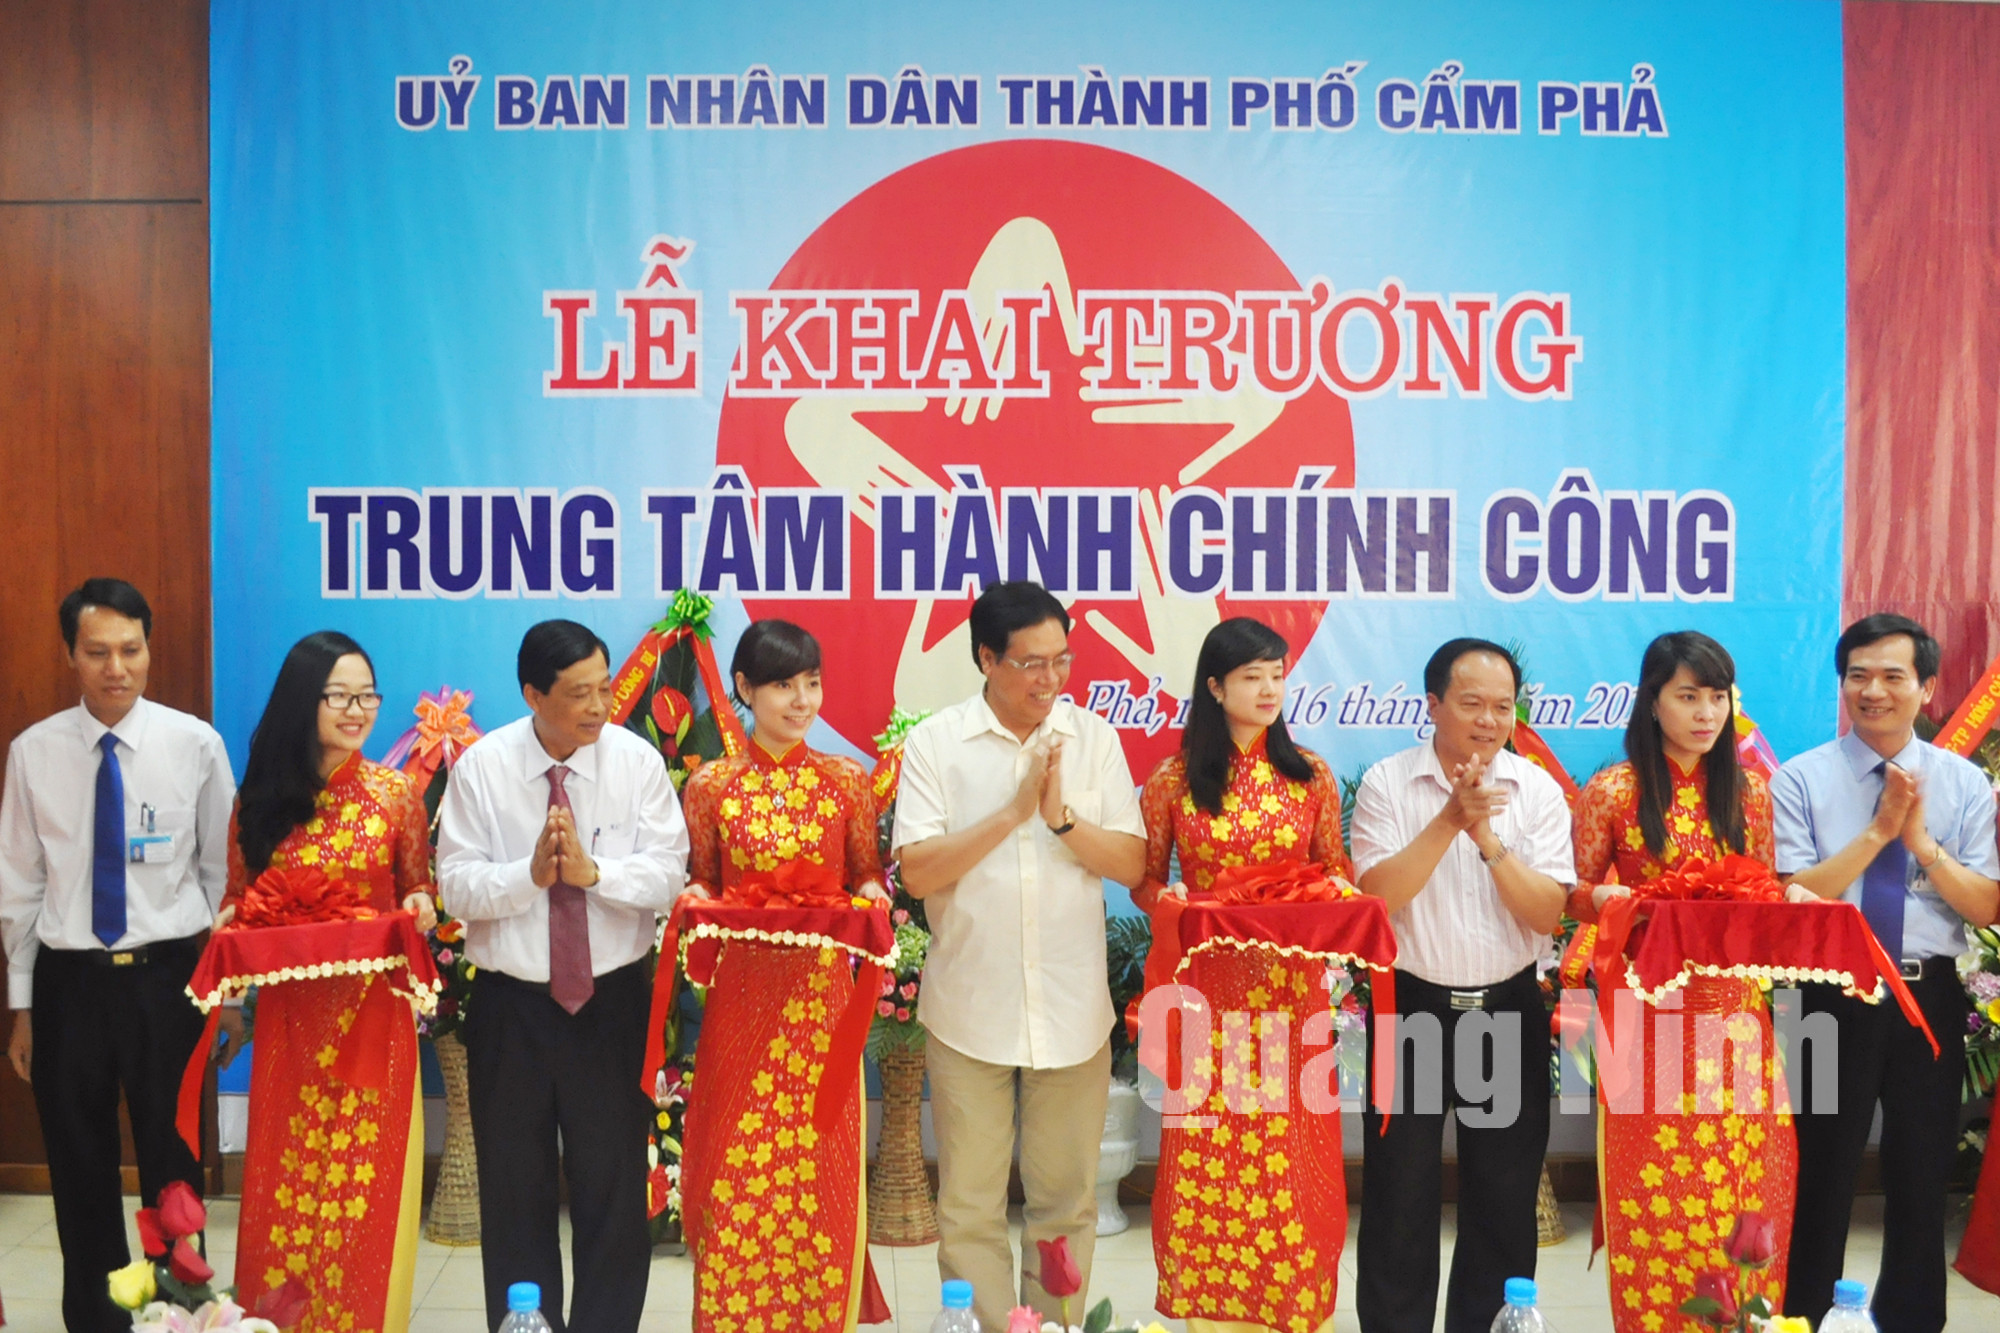 Ngày 16-5-2014, UBND TP Cẩm Phả đã tổ chức Lễ Khai trương Trung tâm Hành chính công của thành phố. Ảnh Hồng Nhung